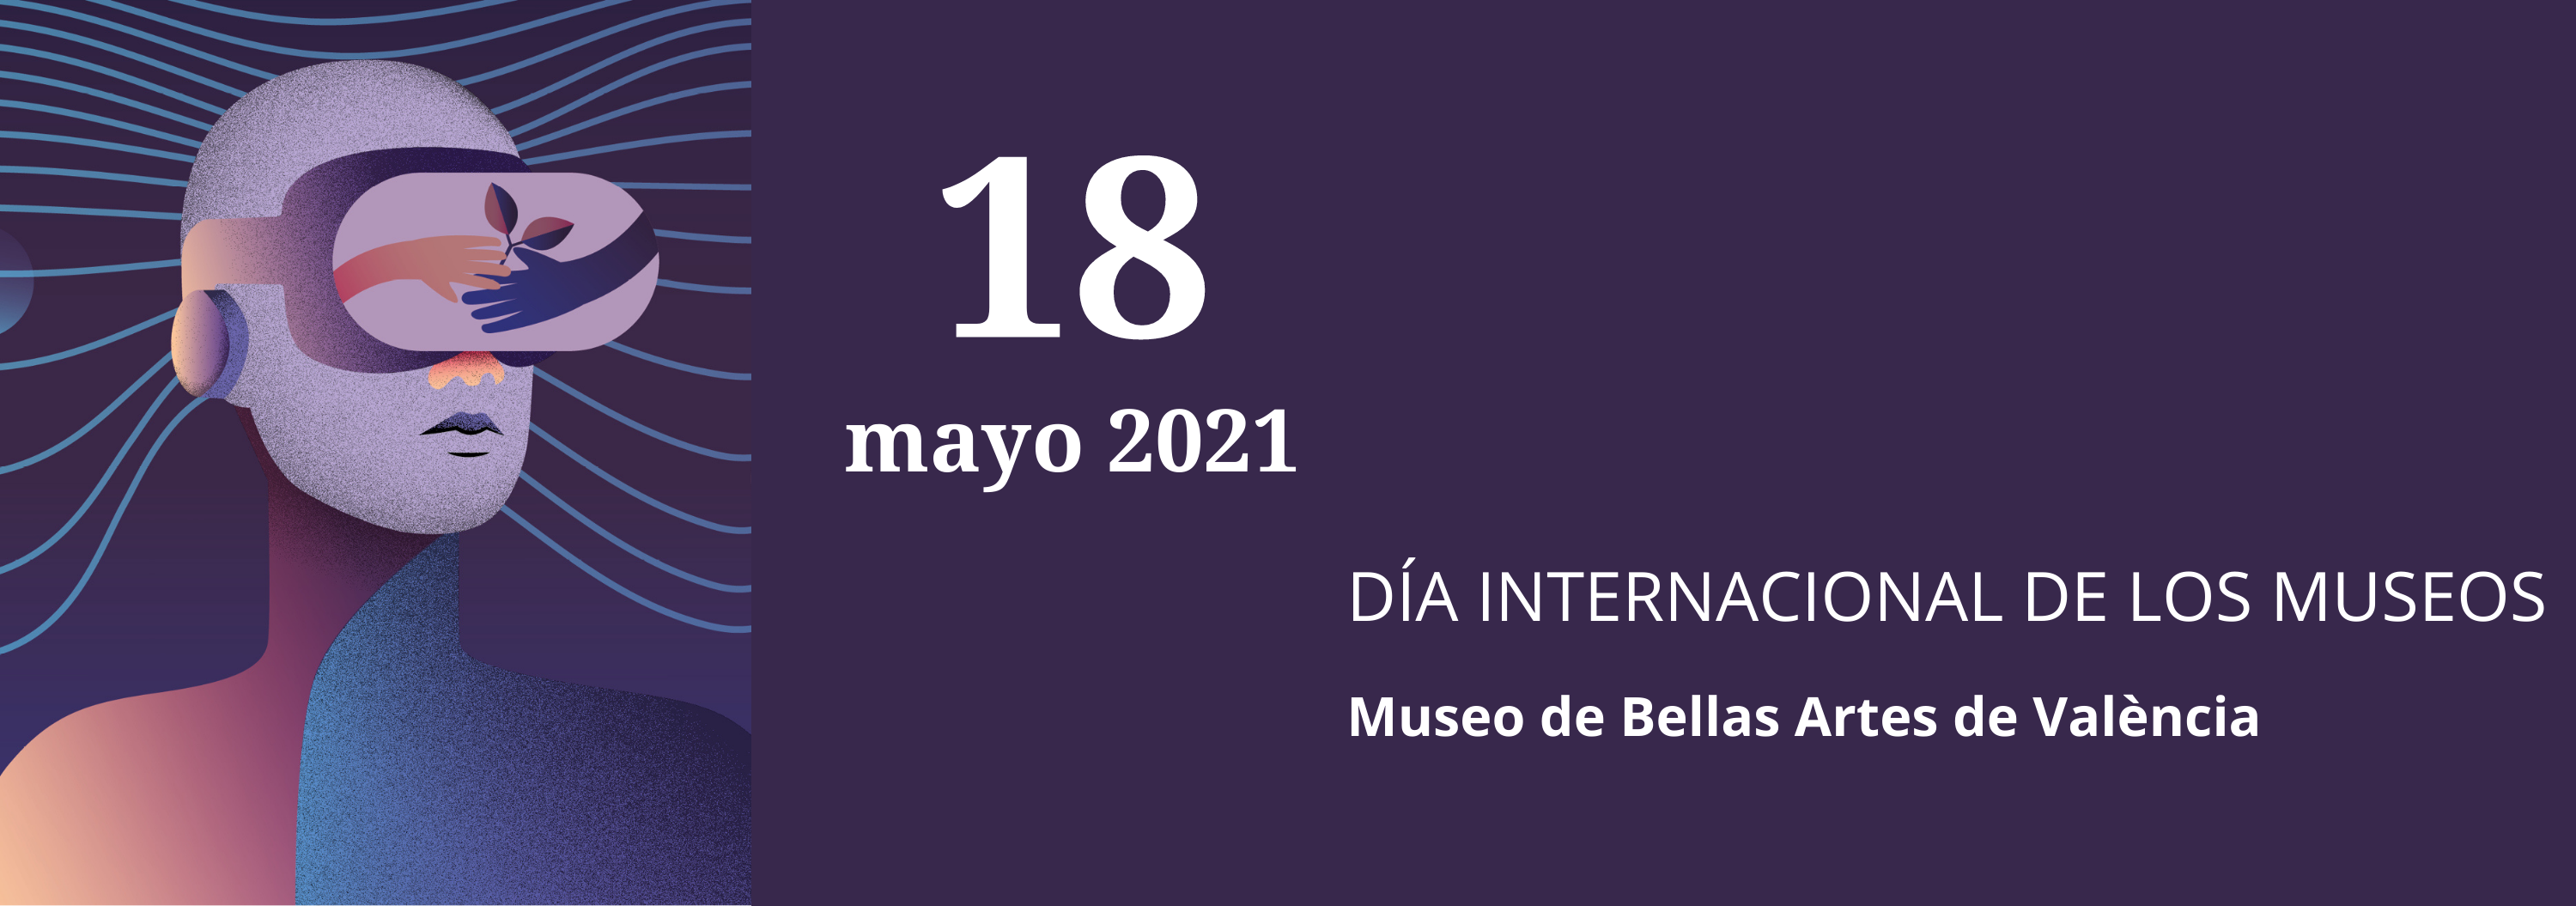 Día Internacional de los Museos 2021